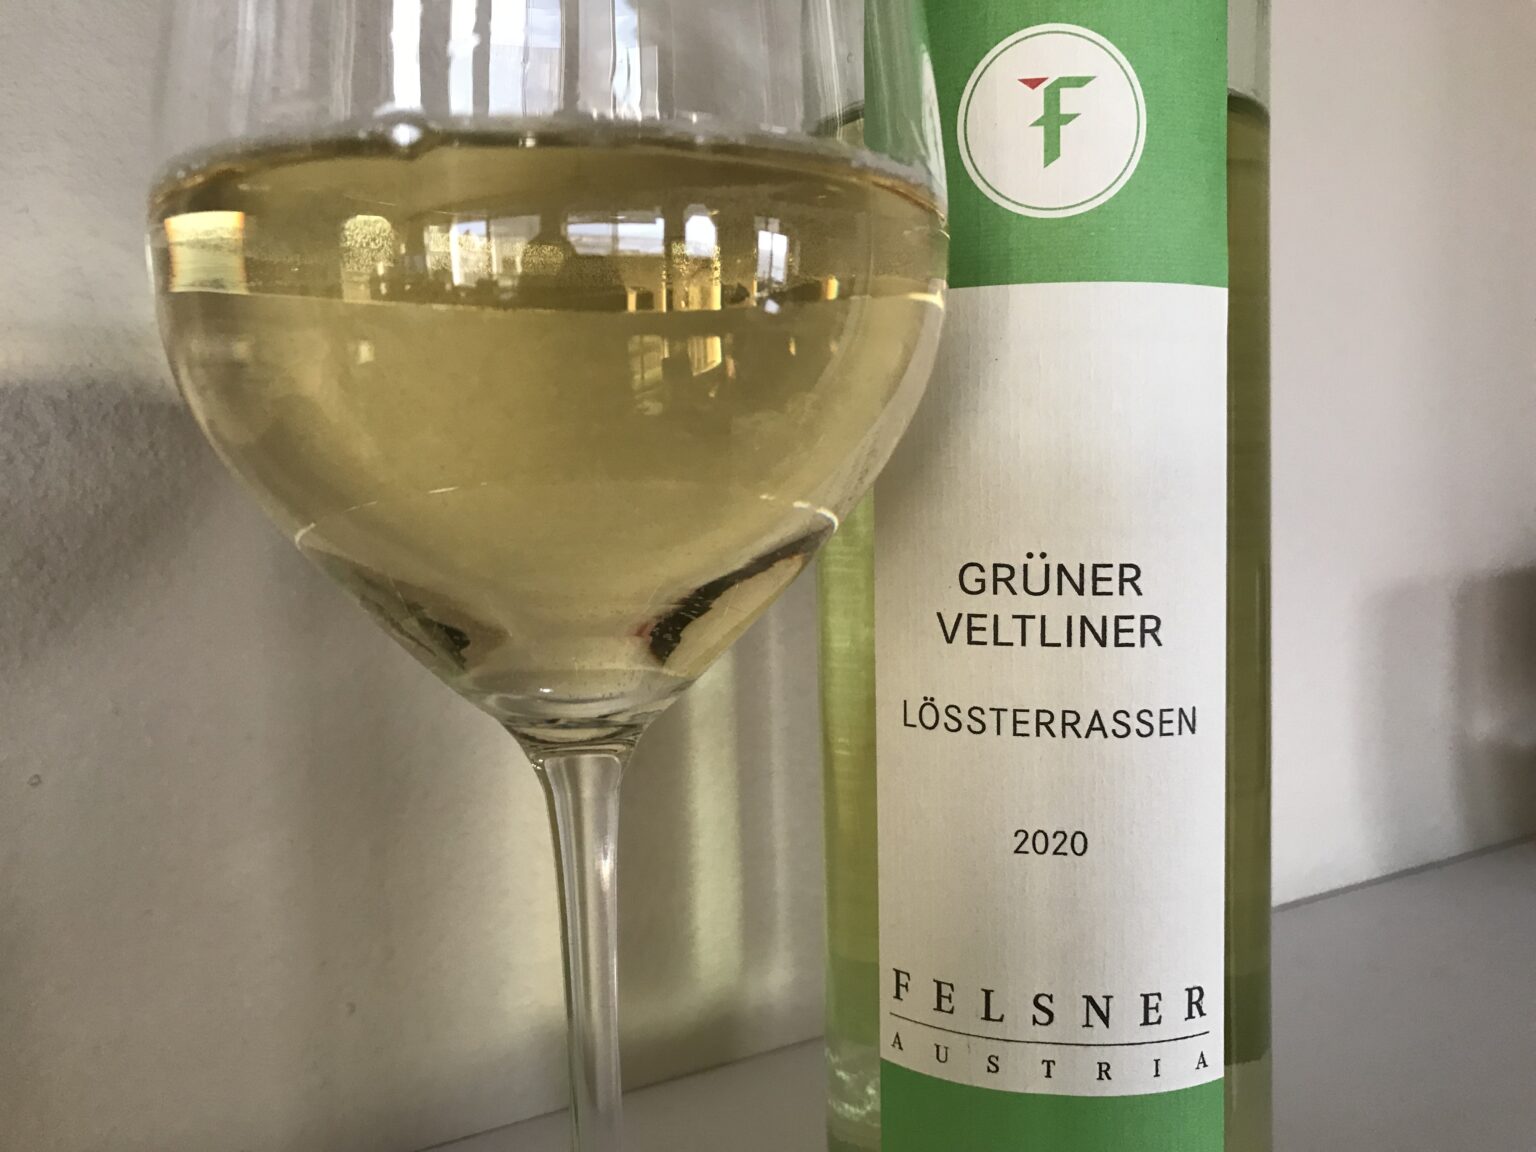 The 2020 Felsner Lossterrassen Gruner Veltliner from Austria